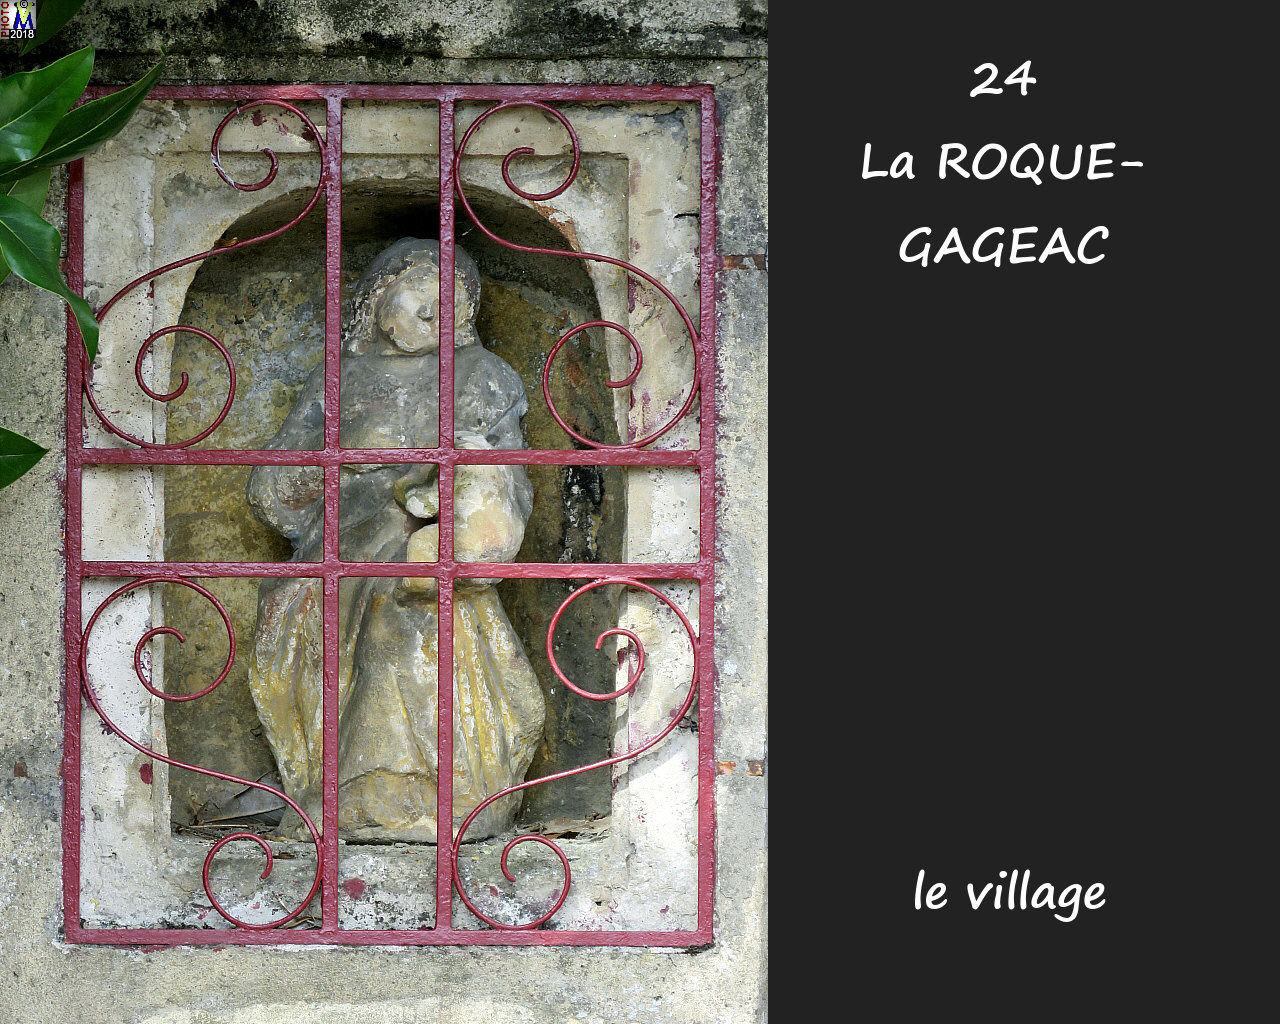 24ROQUE-GAGEAC_village_1026.jpg